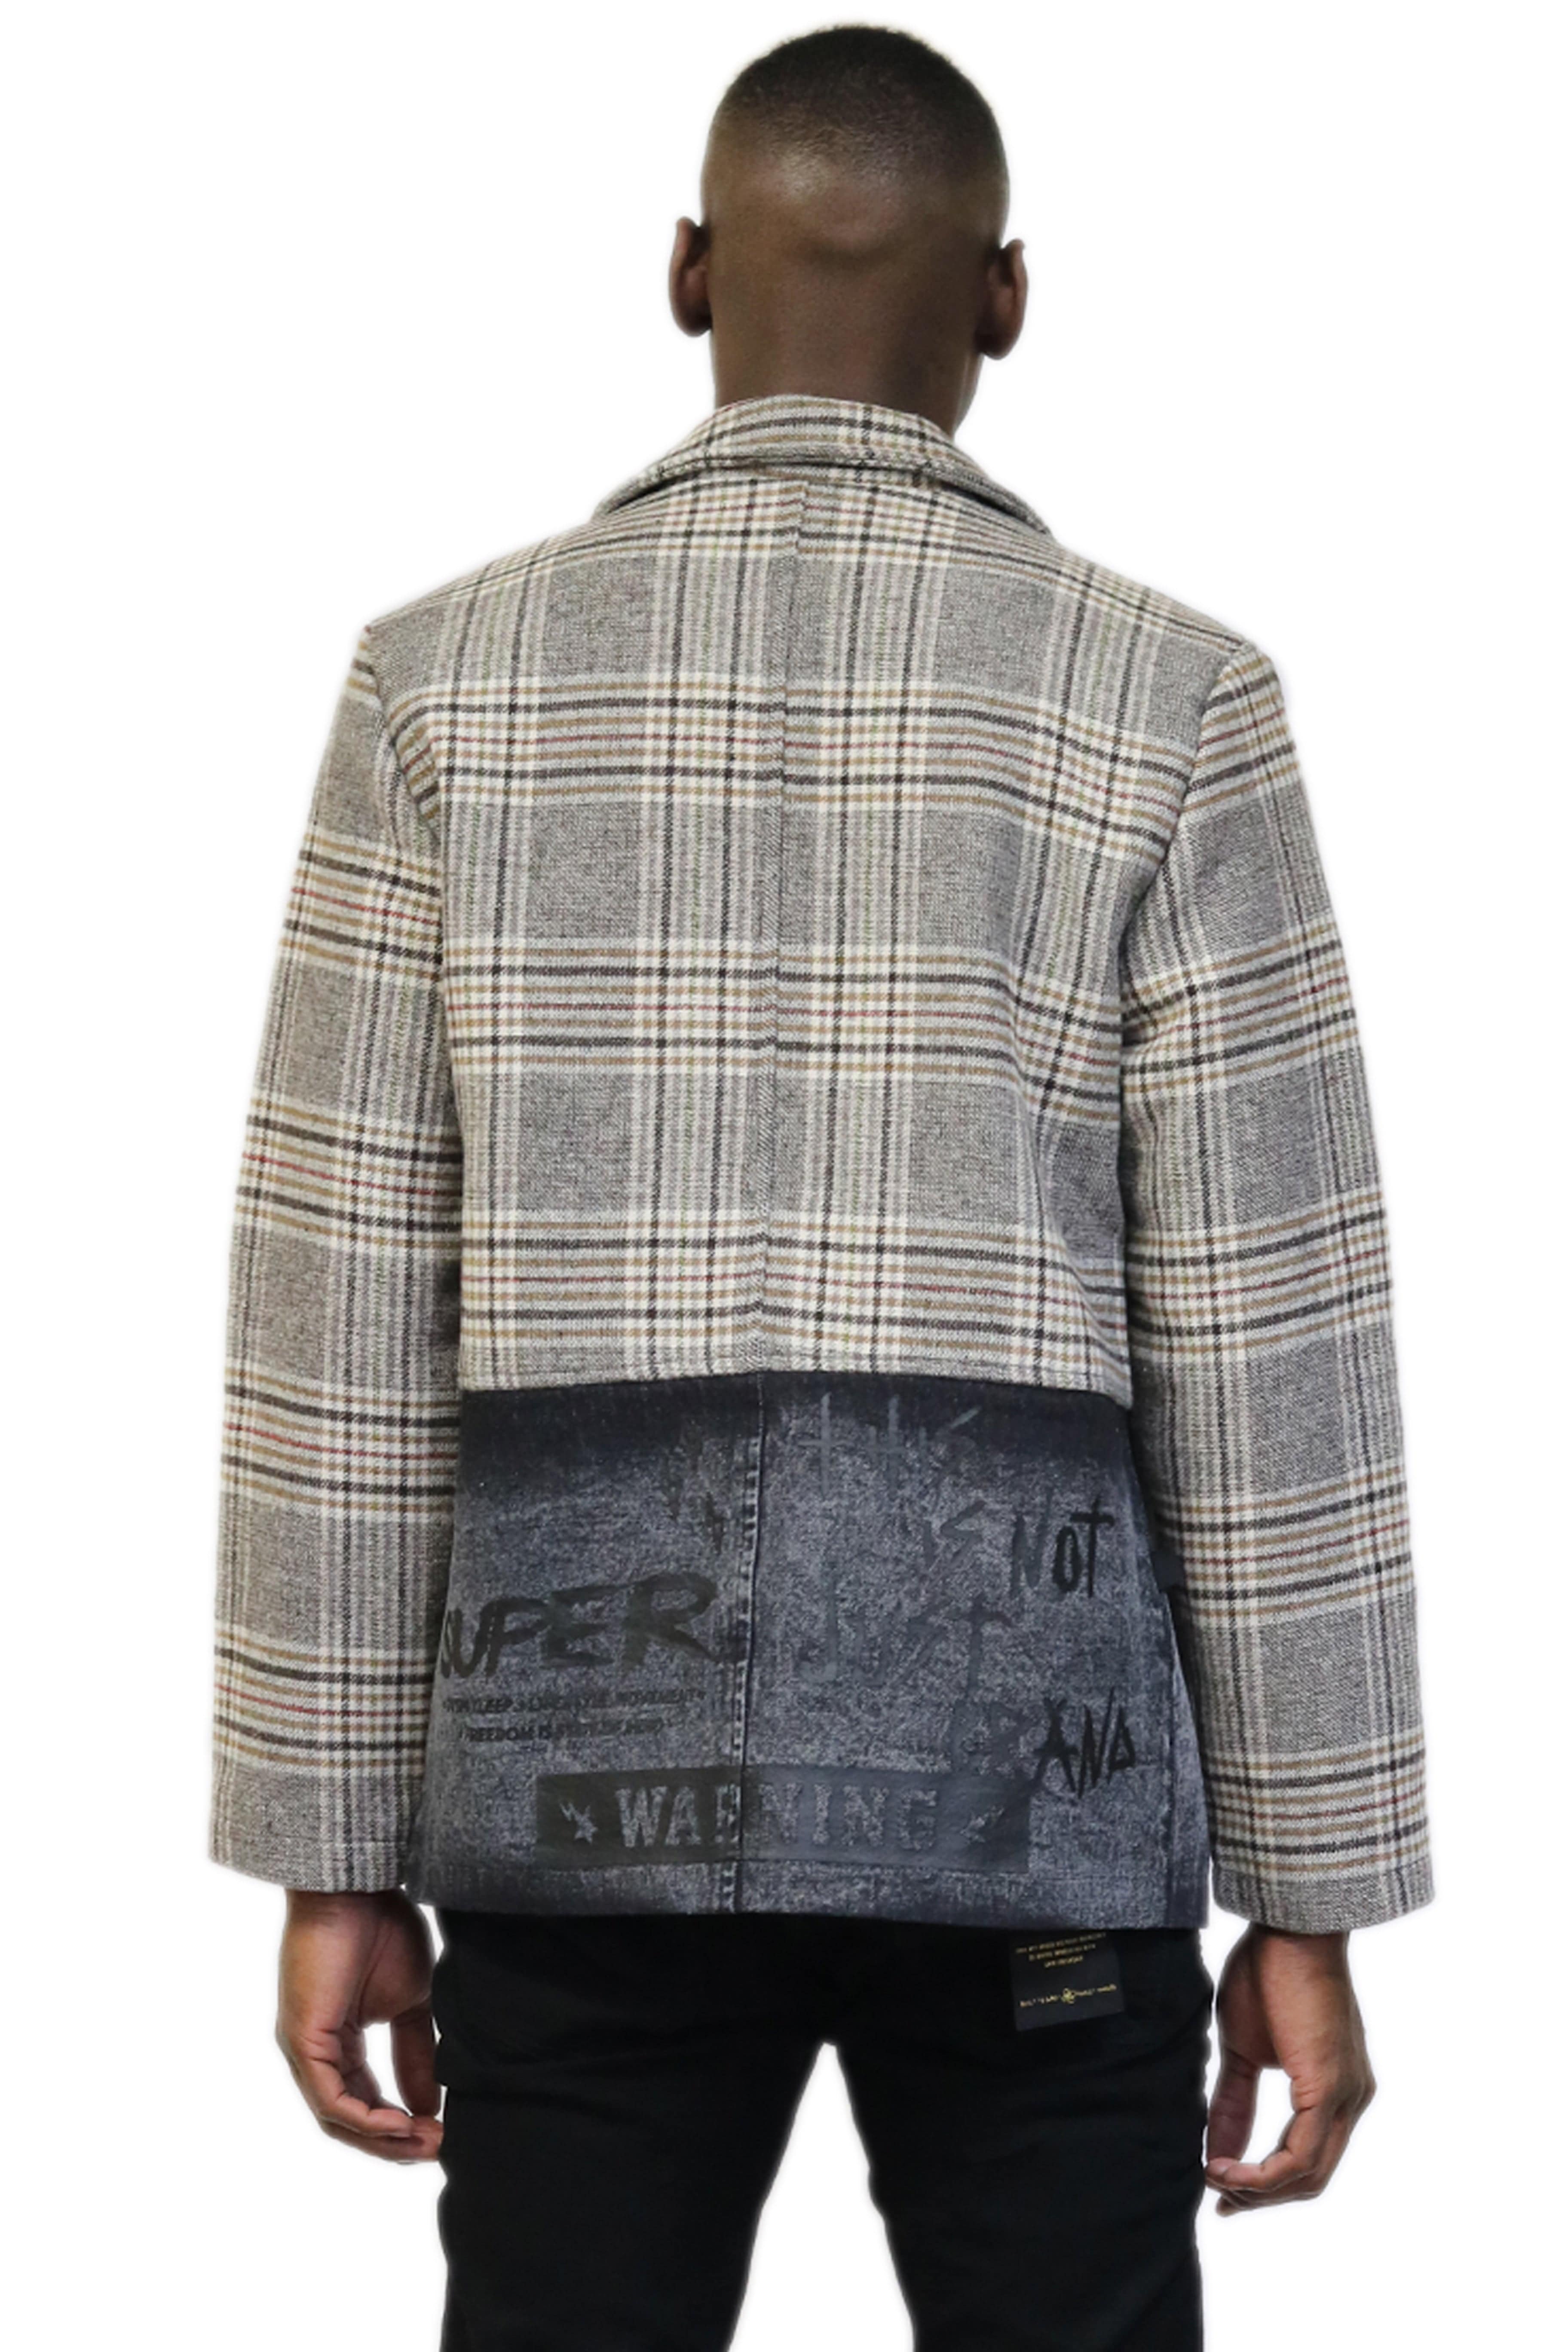 KLEEP Men's Jacket CADEN Men's premium heavy wool with denim mixed trench coat